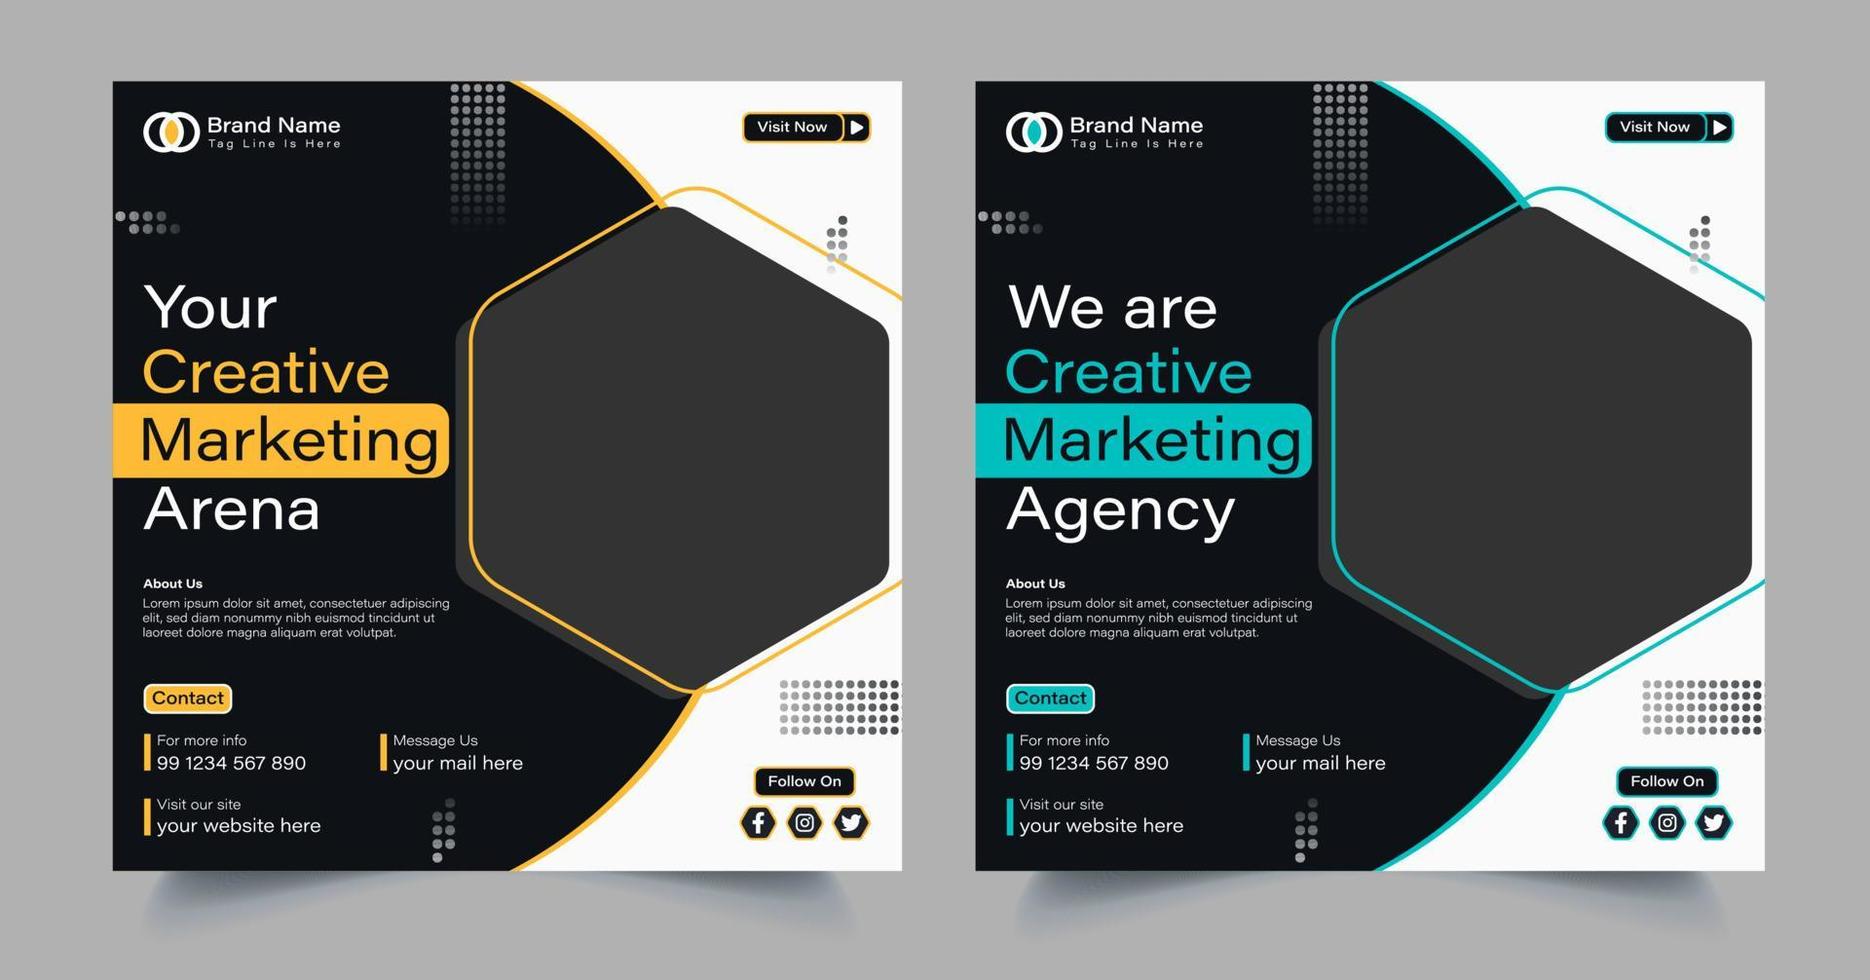 digital marketing agency social media template design vector